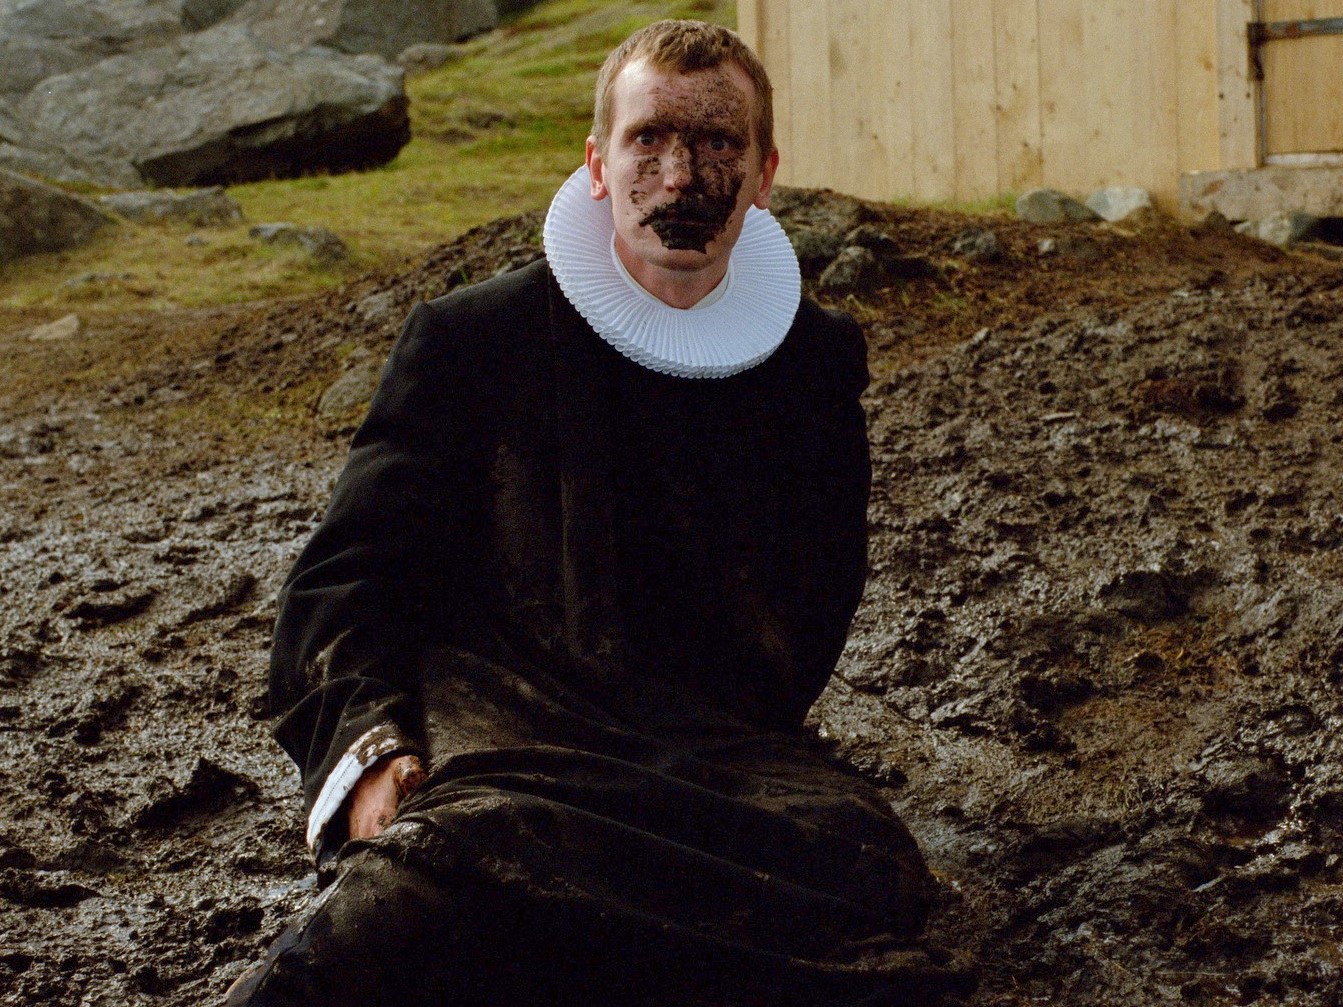 Elliott Crosset Hove as Lucas in Godland